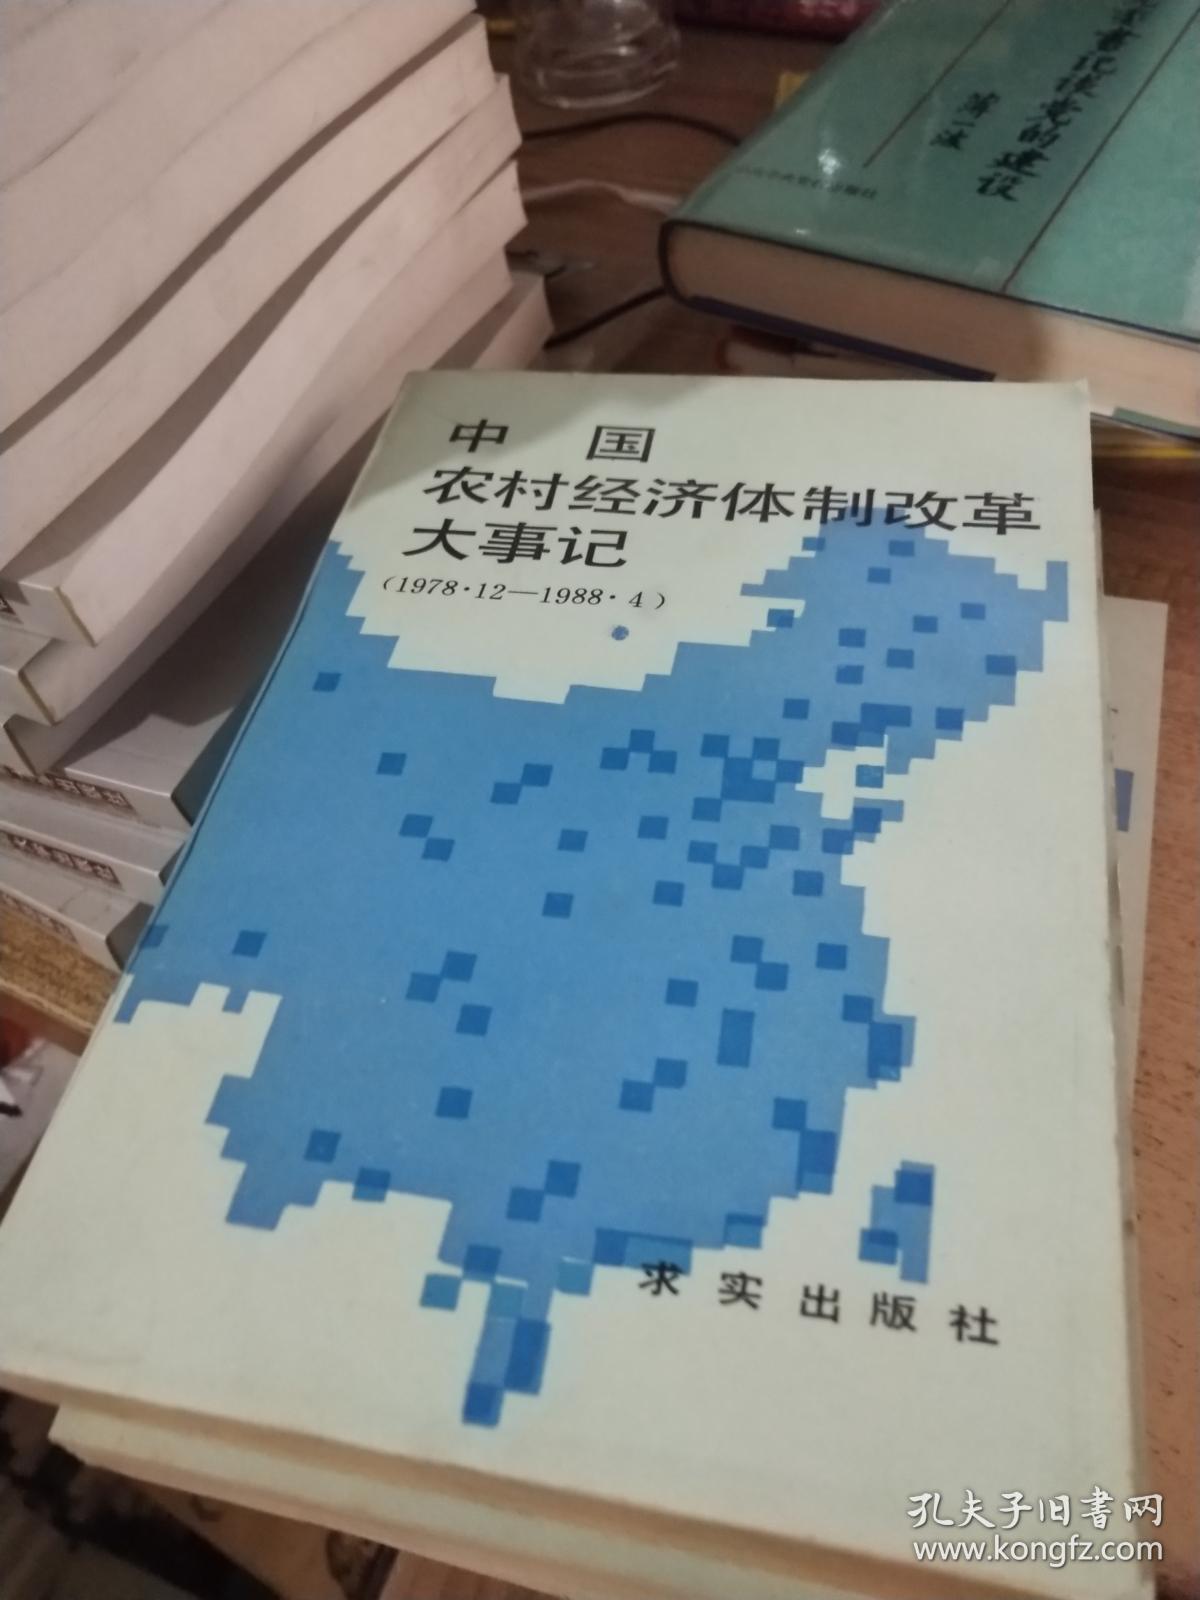 中国农村经济体制改革大事记:1978.12-1988.4